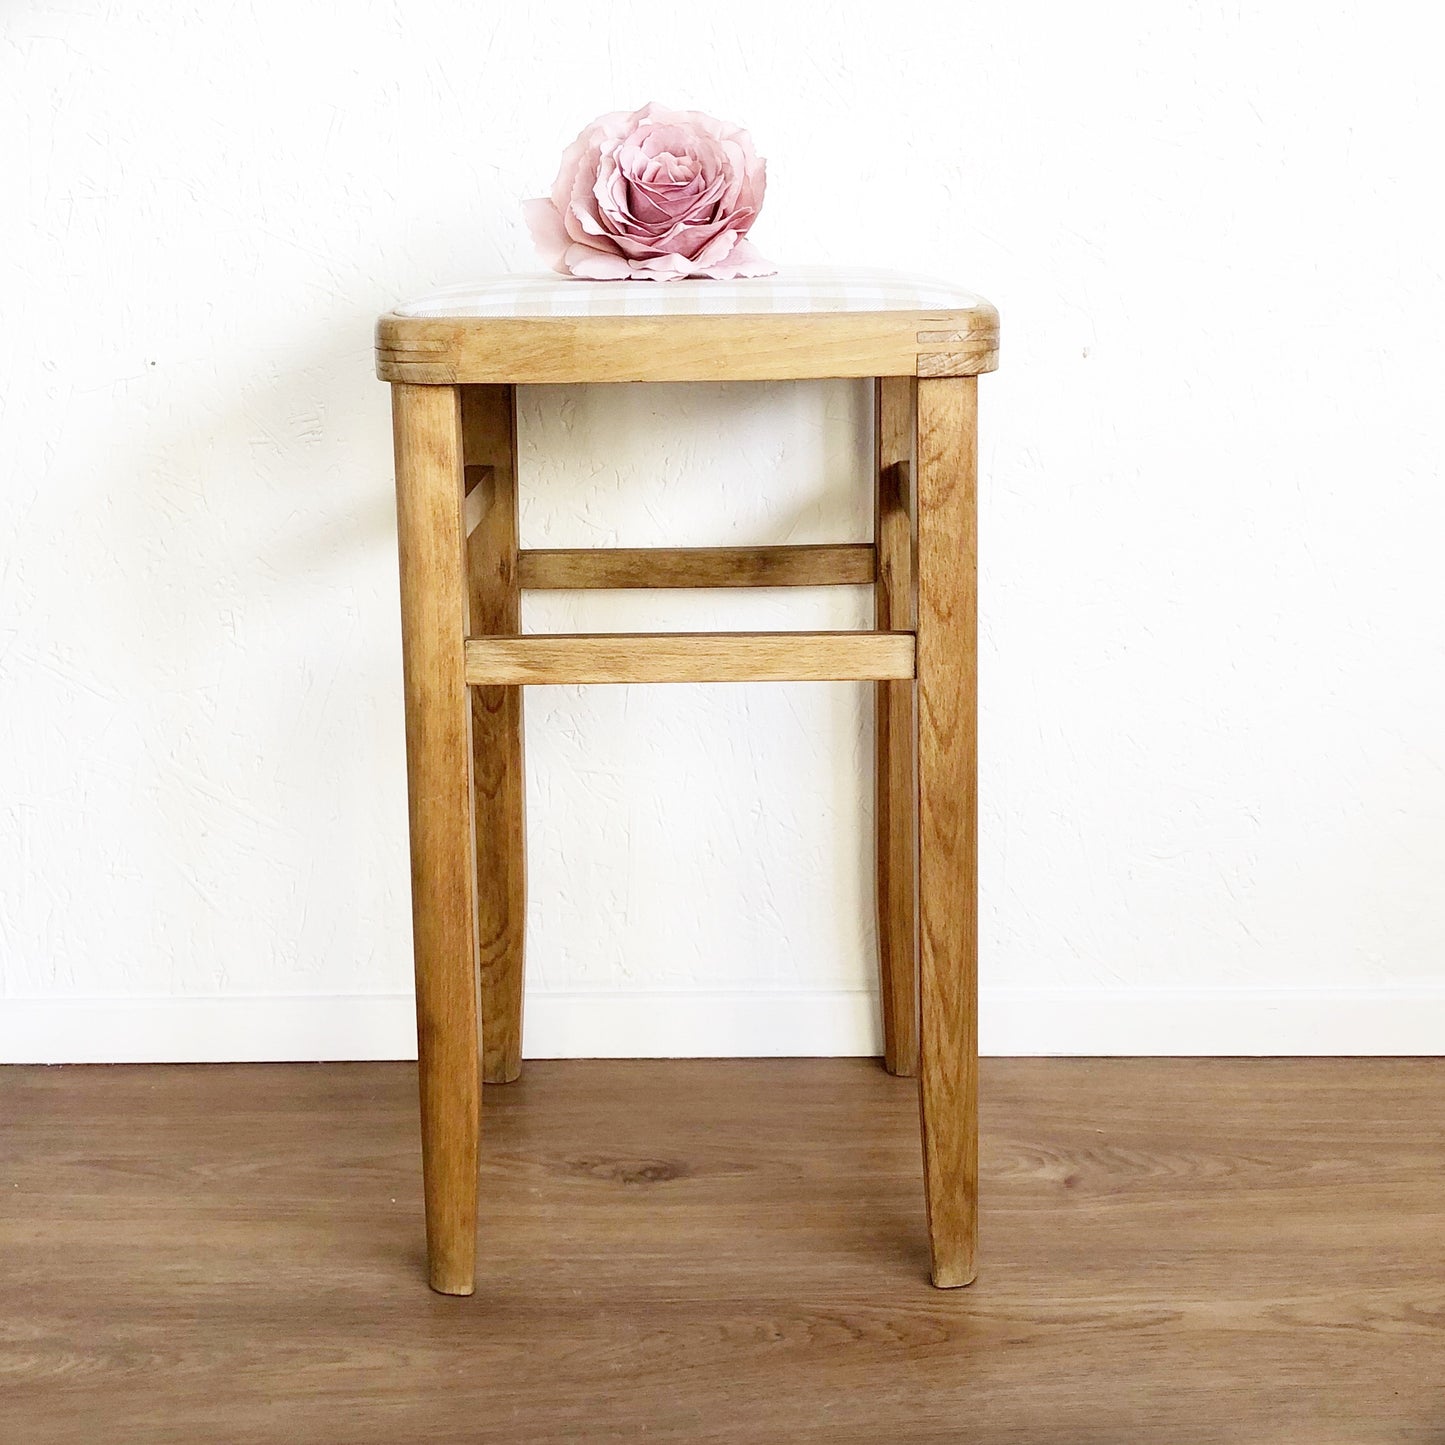 Vintage kitchen Wooden stool - Unique Home Pieces